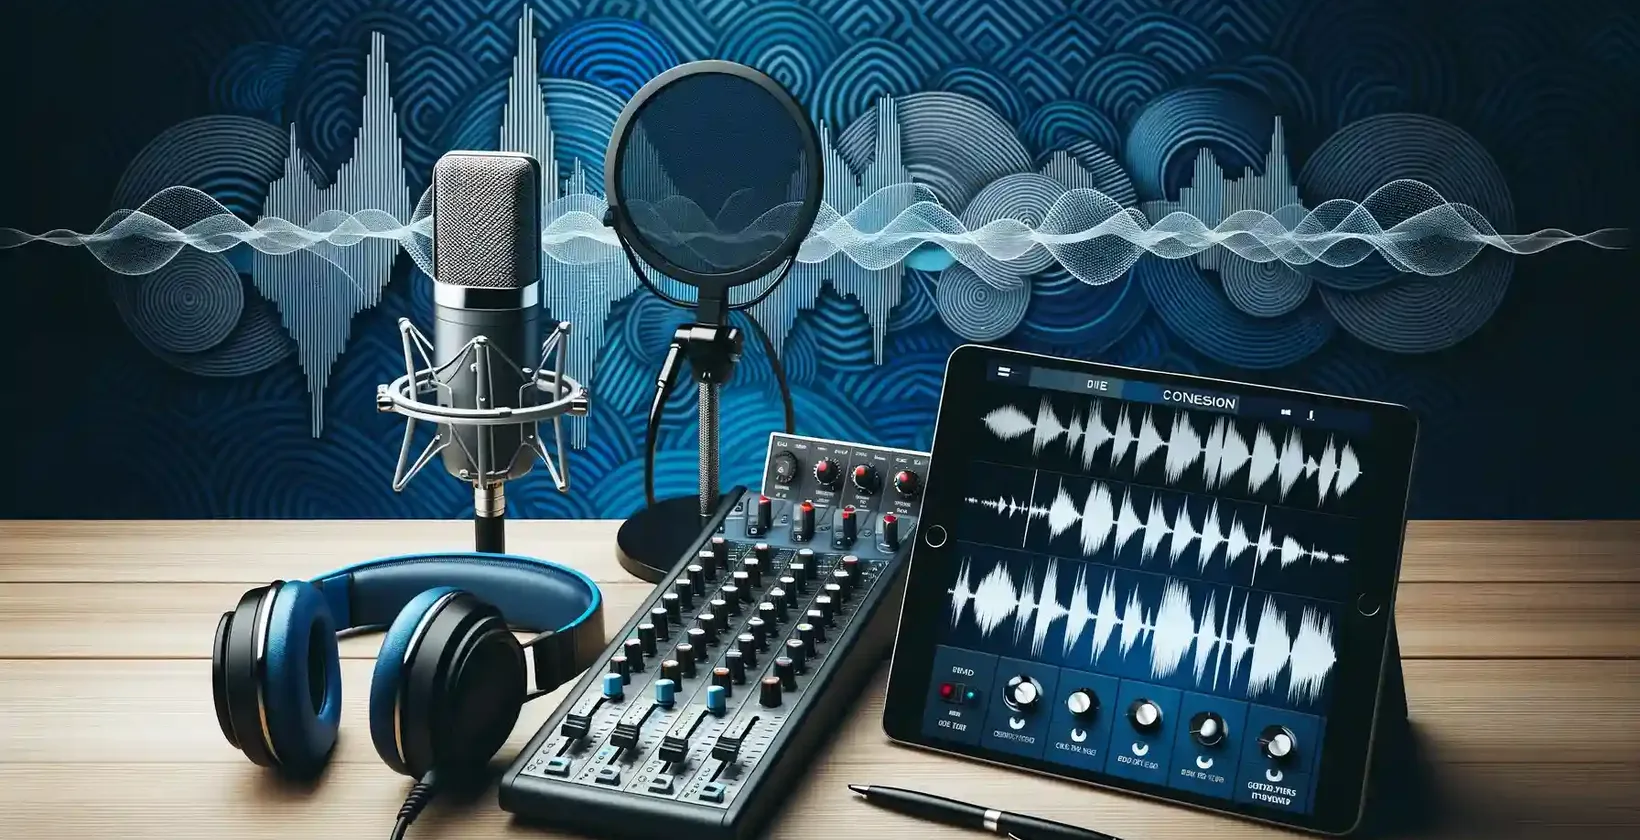 Configurazione professionale per la trascrizione di podcast con microfono e cuffie che sottolineano i servizi di trascrizione.